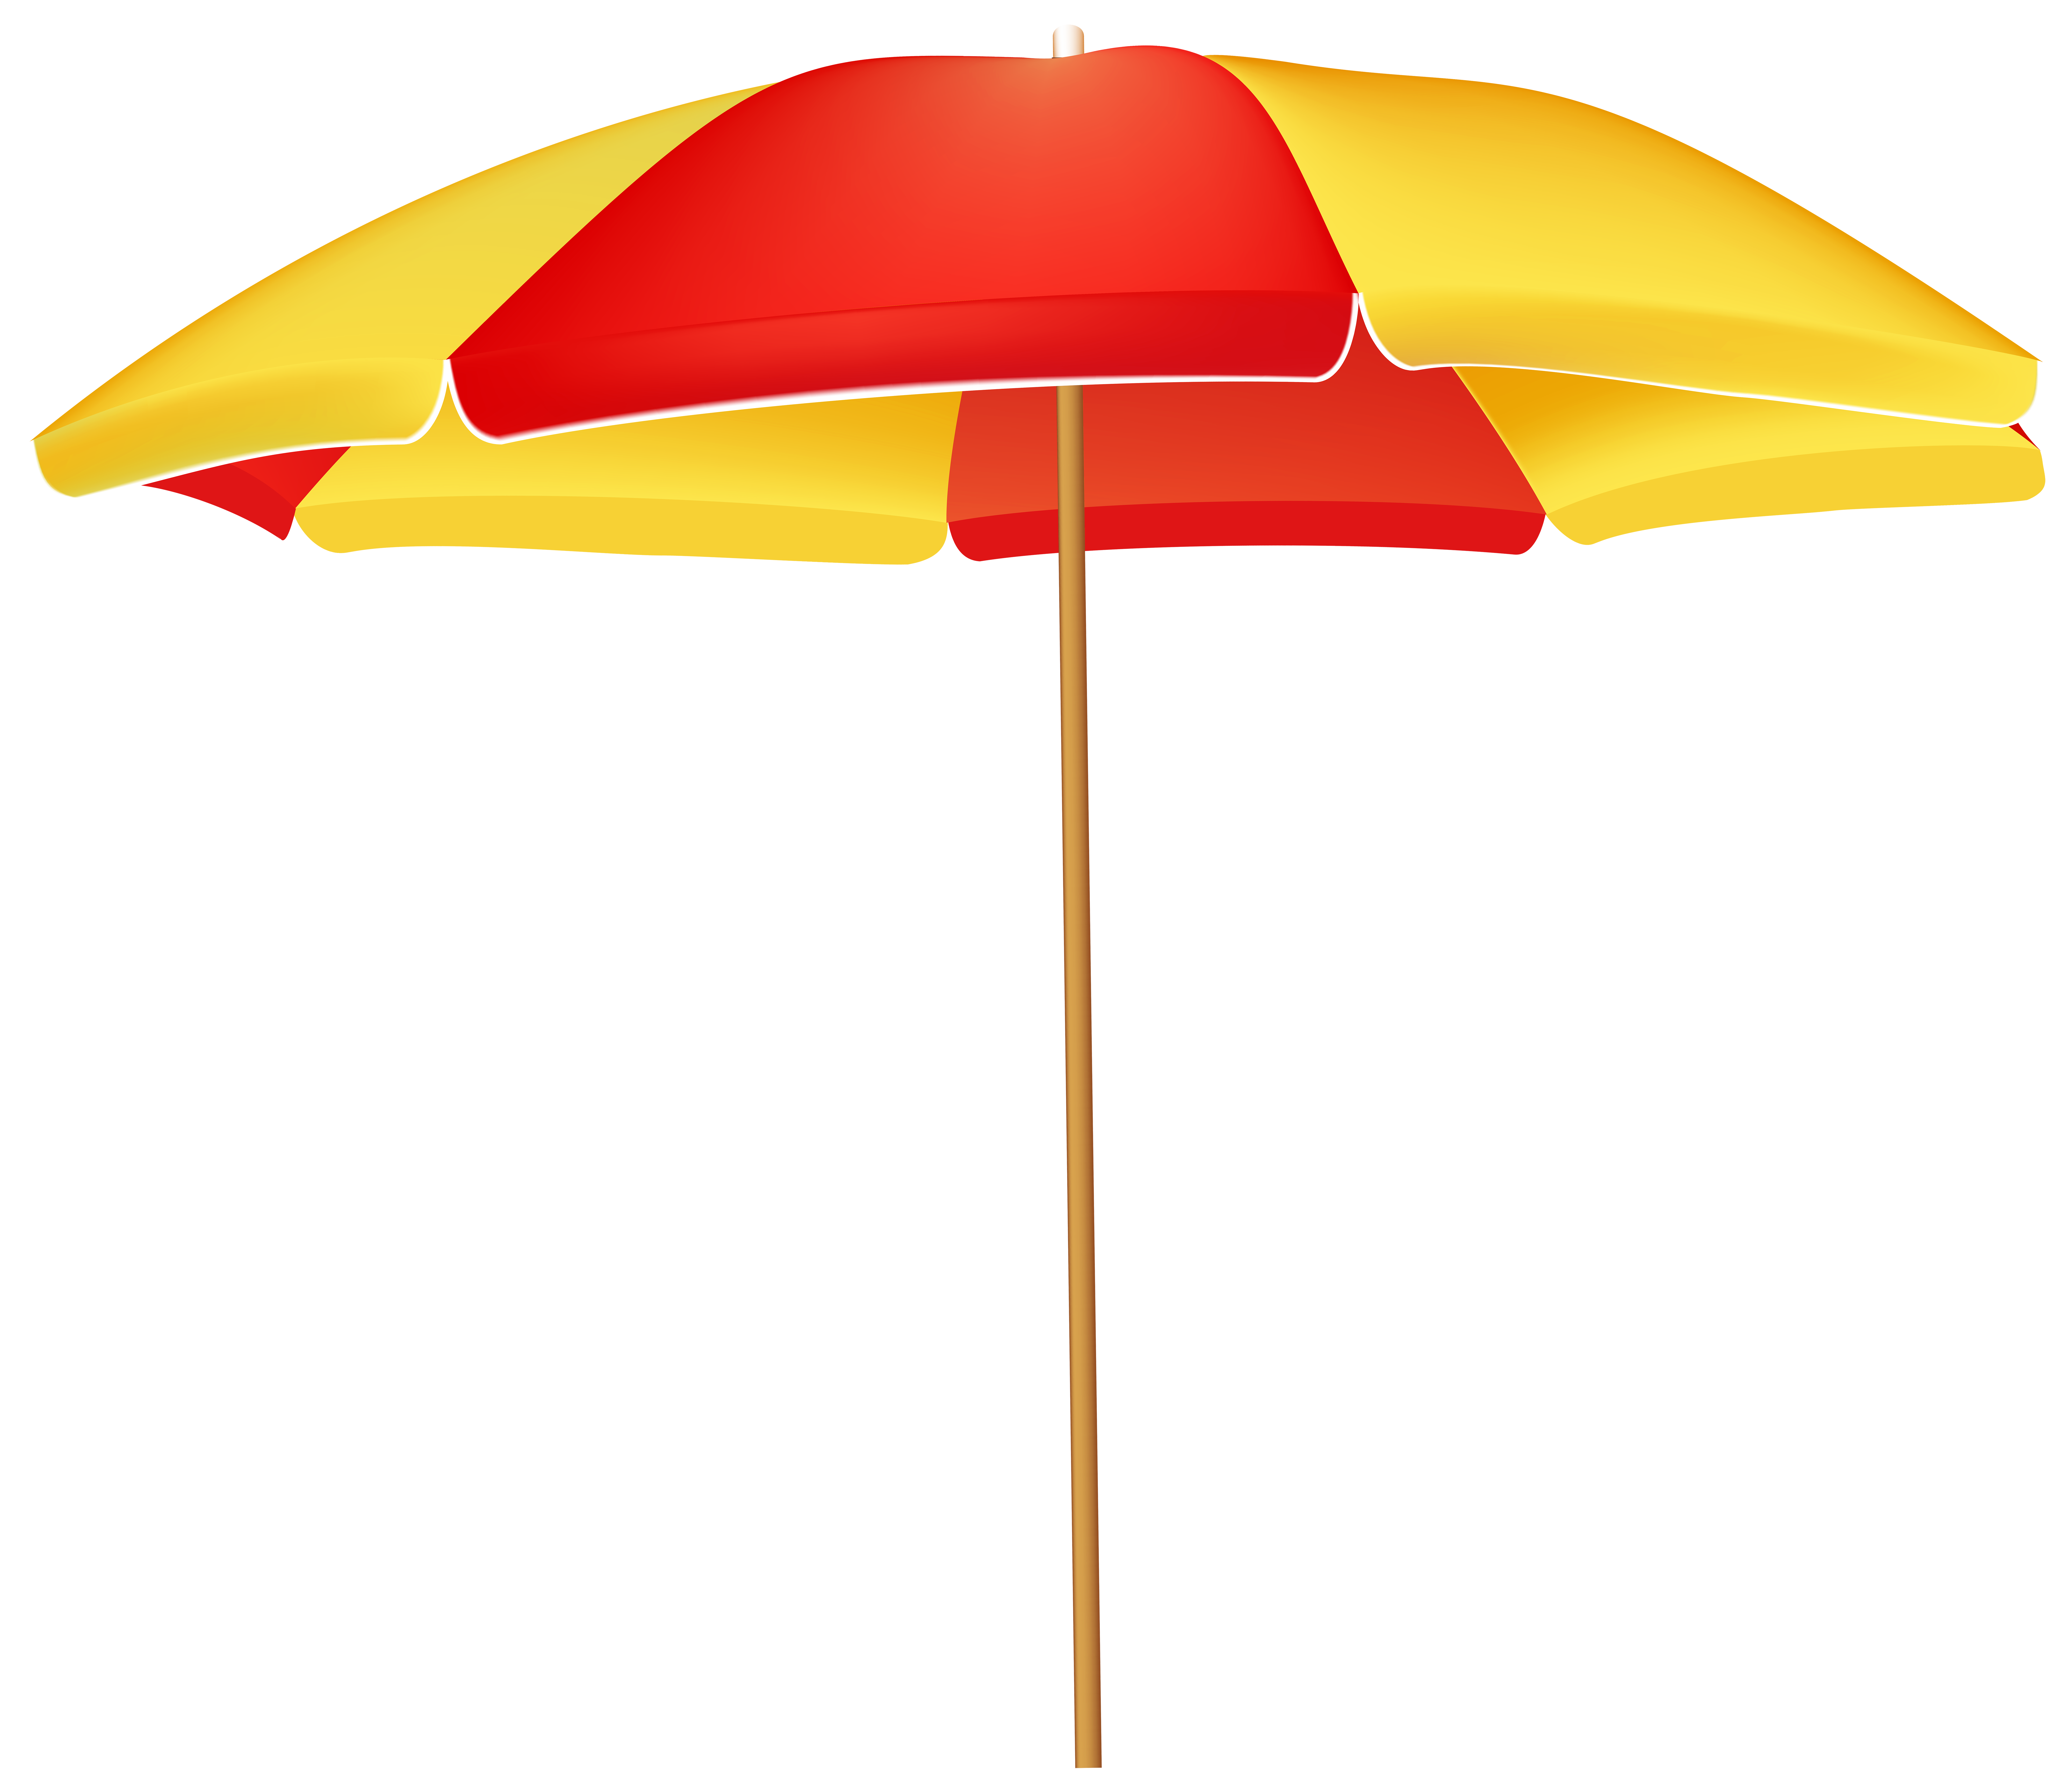 Beach Umbrella PNG Clip Art.